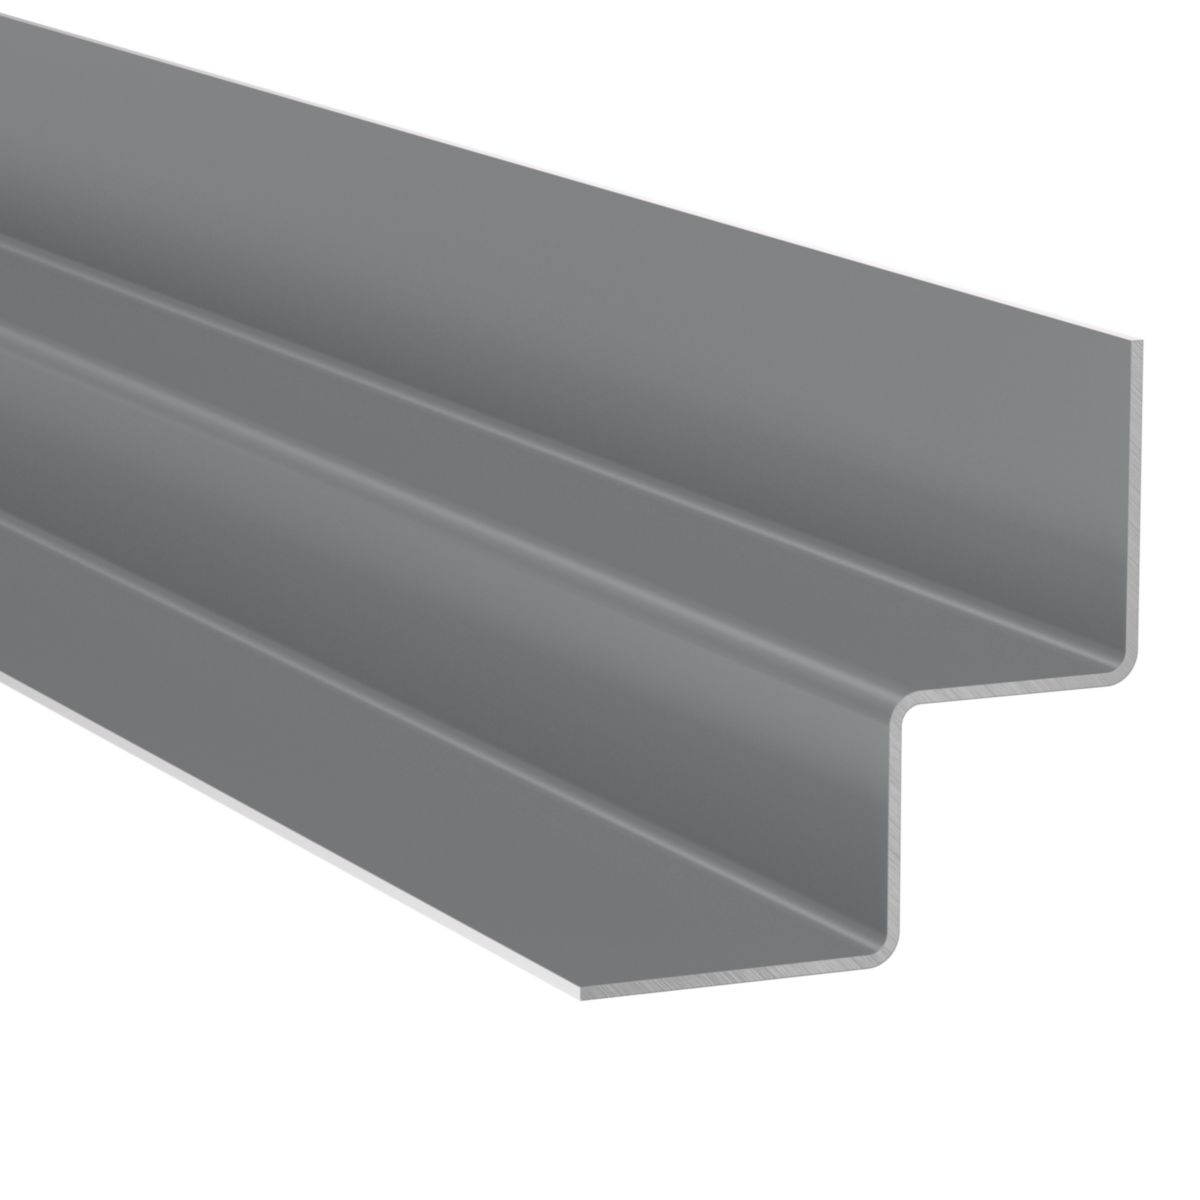 angle-interieur-metal-hardieplank-gris-anthrac-james-hardie-0